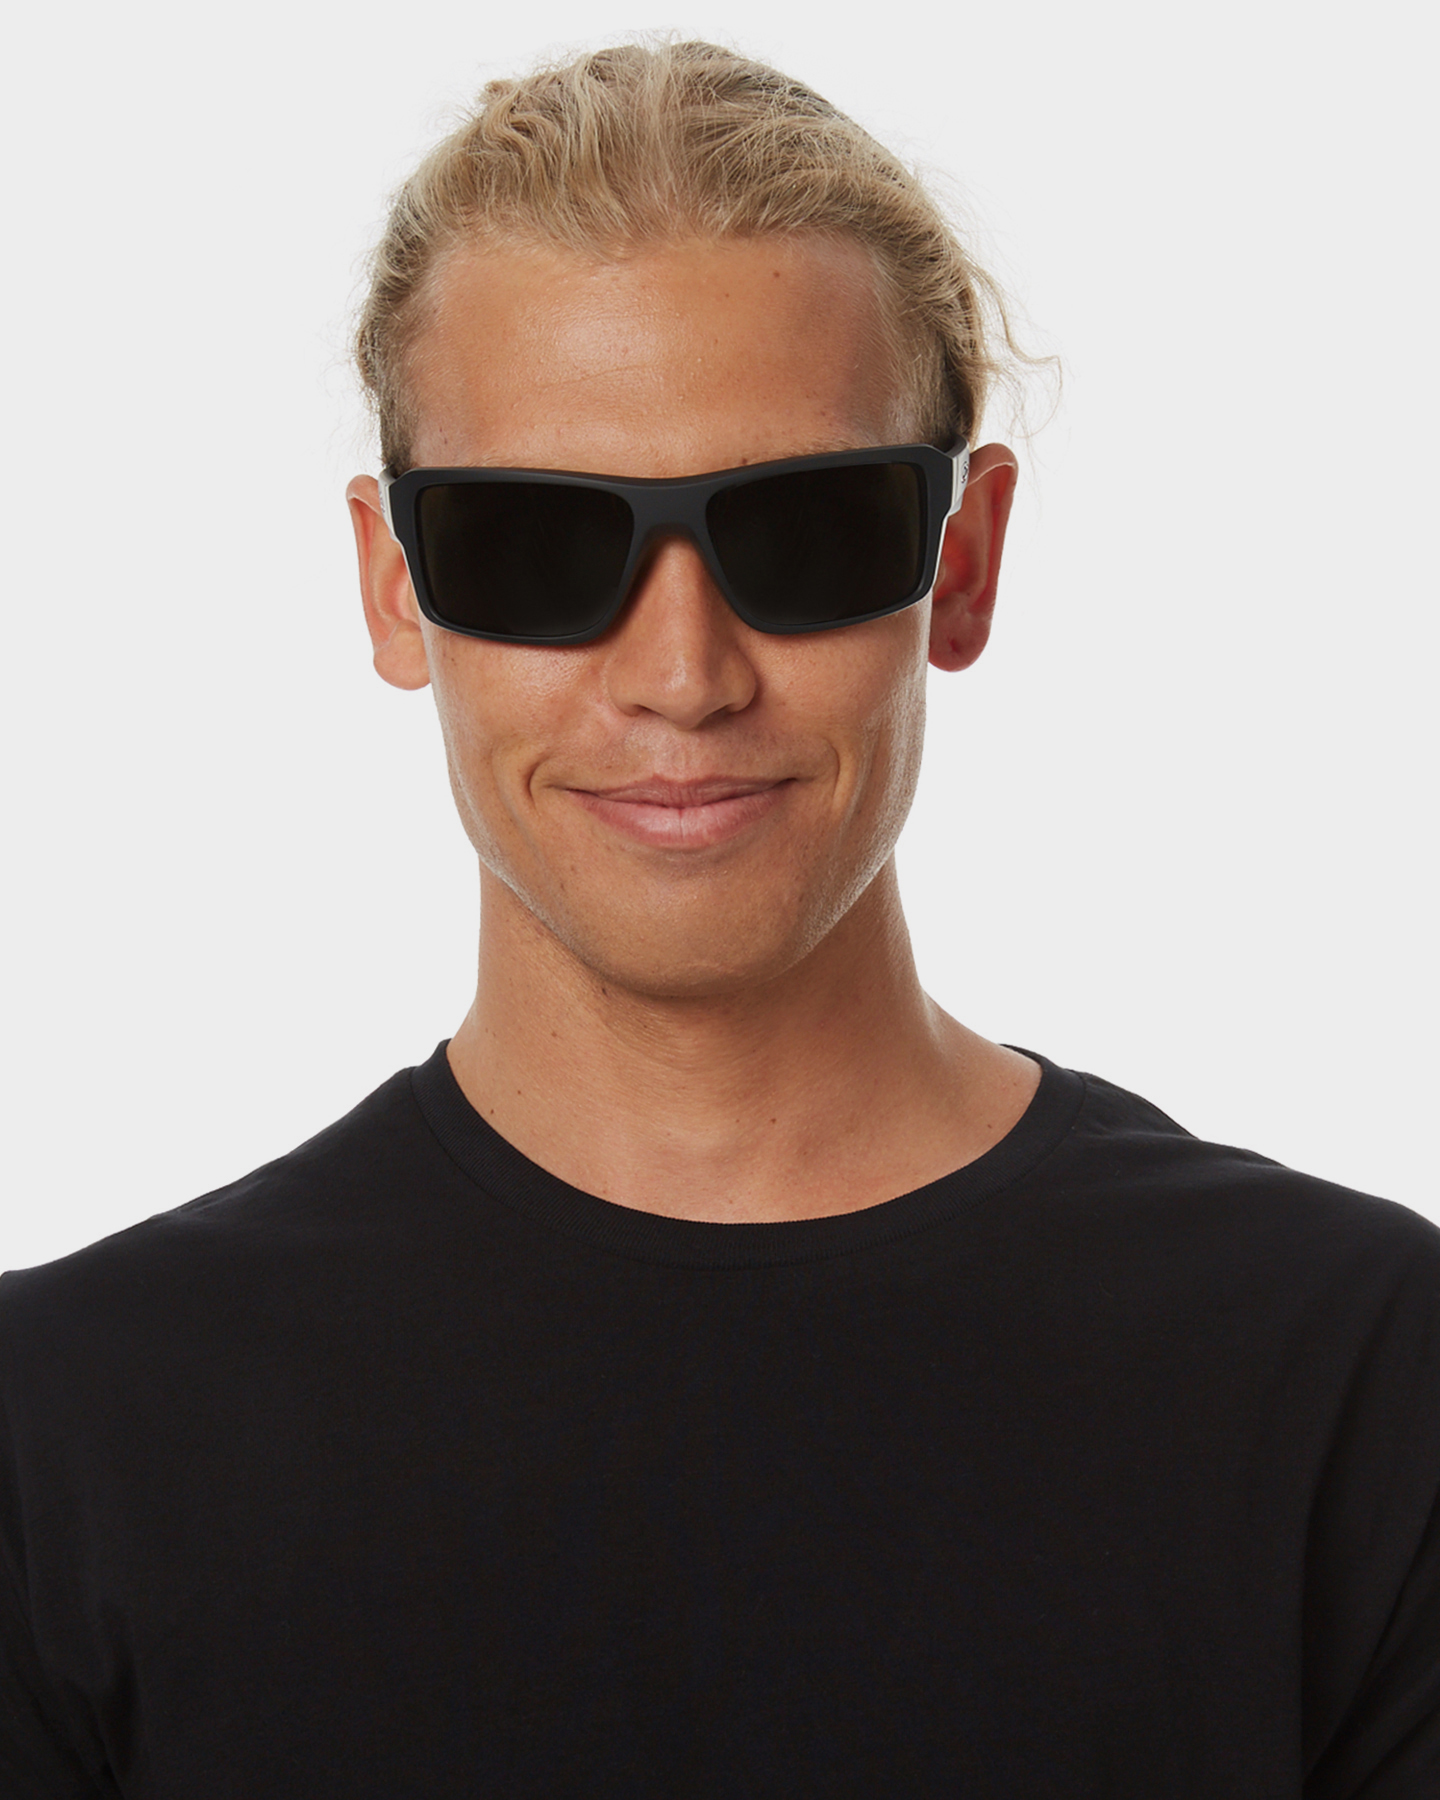 oakley edge sunglasses